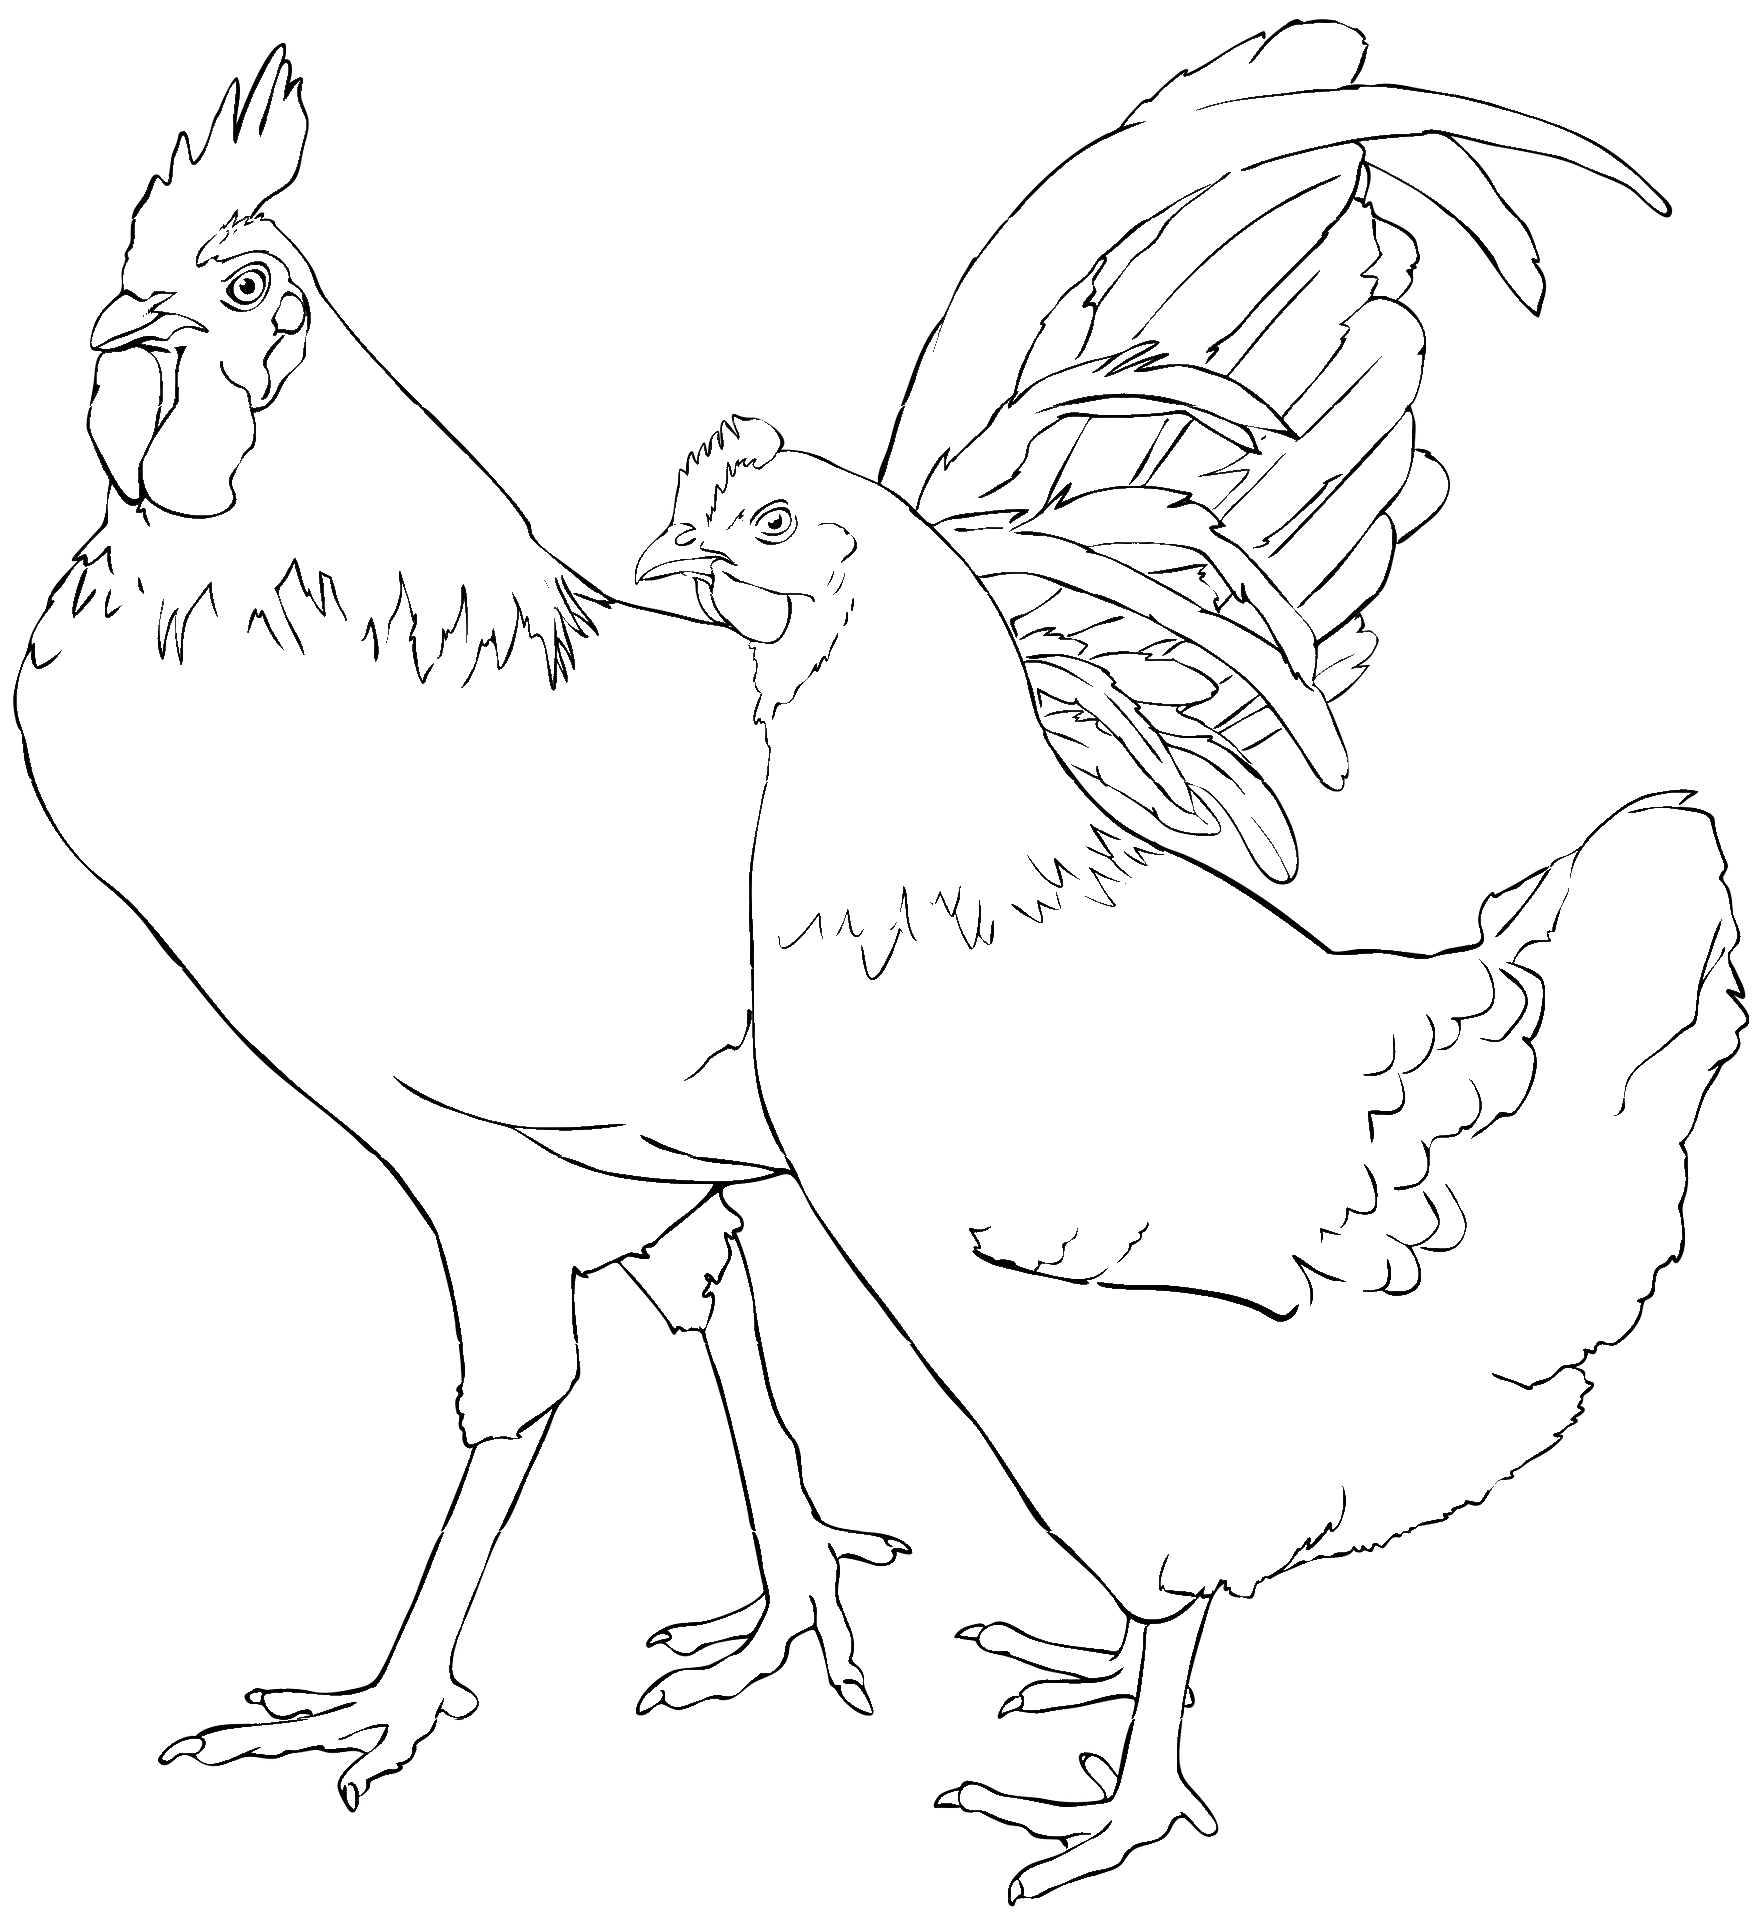 Disegno da colorare di una gallina